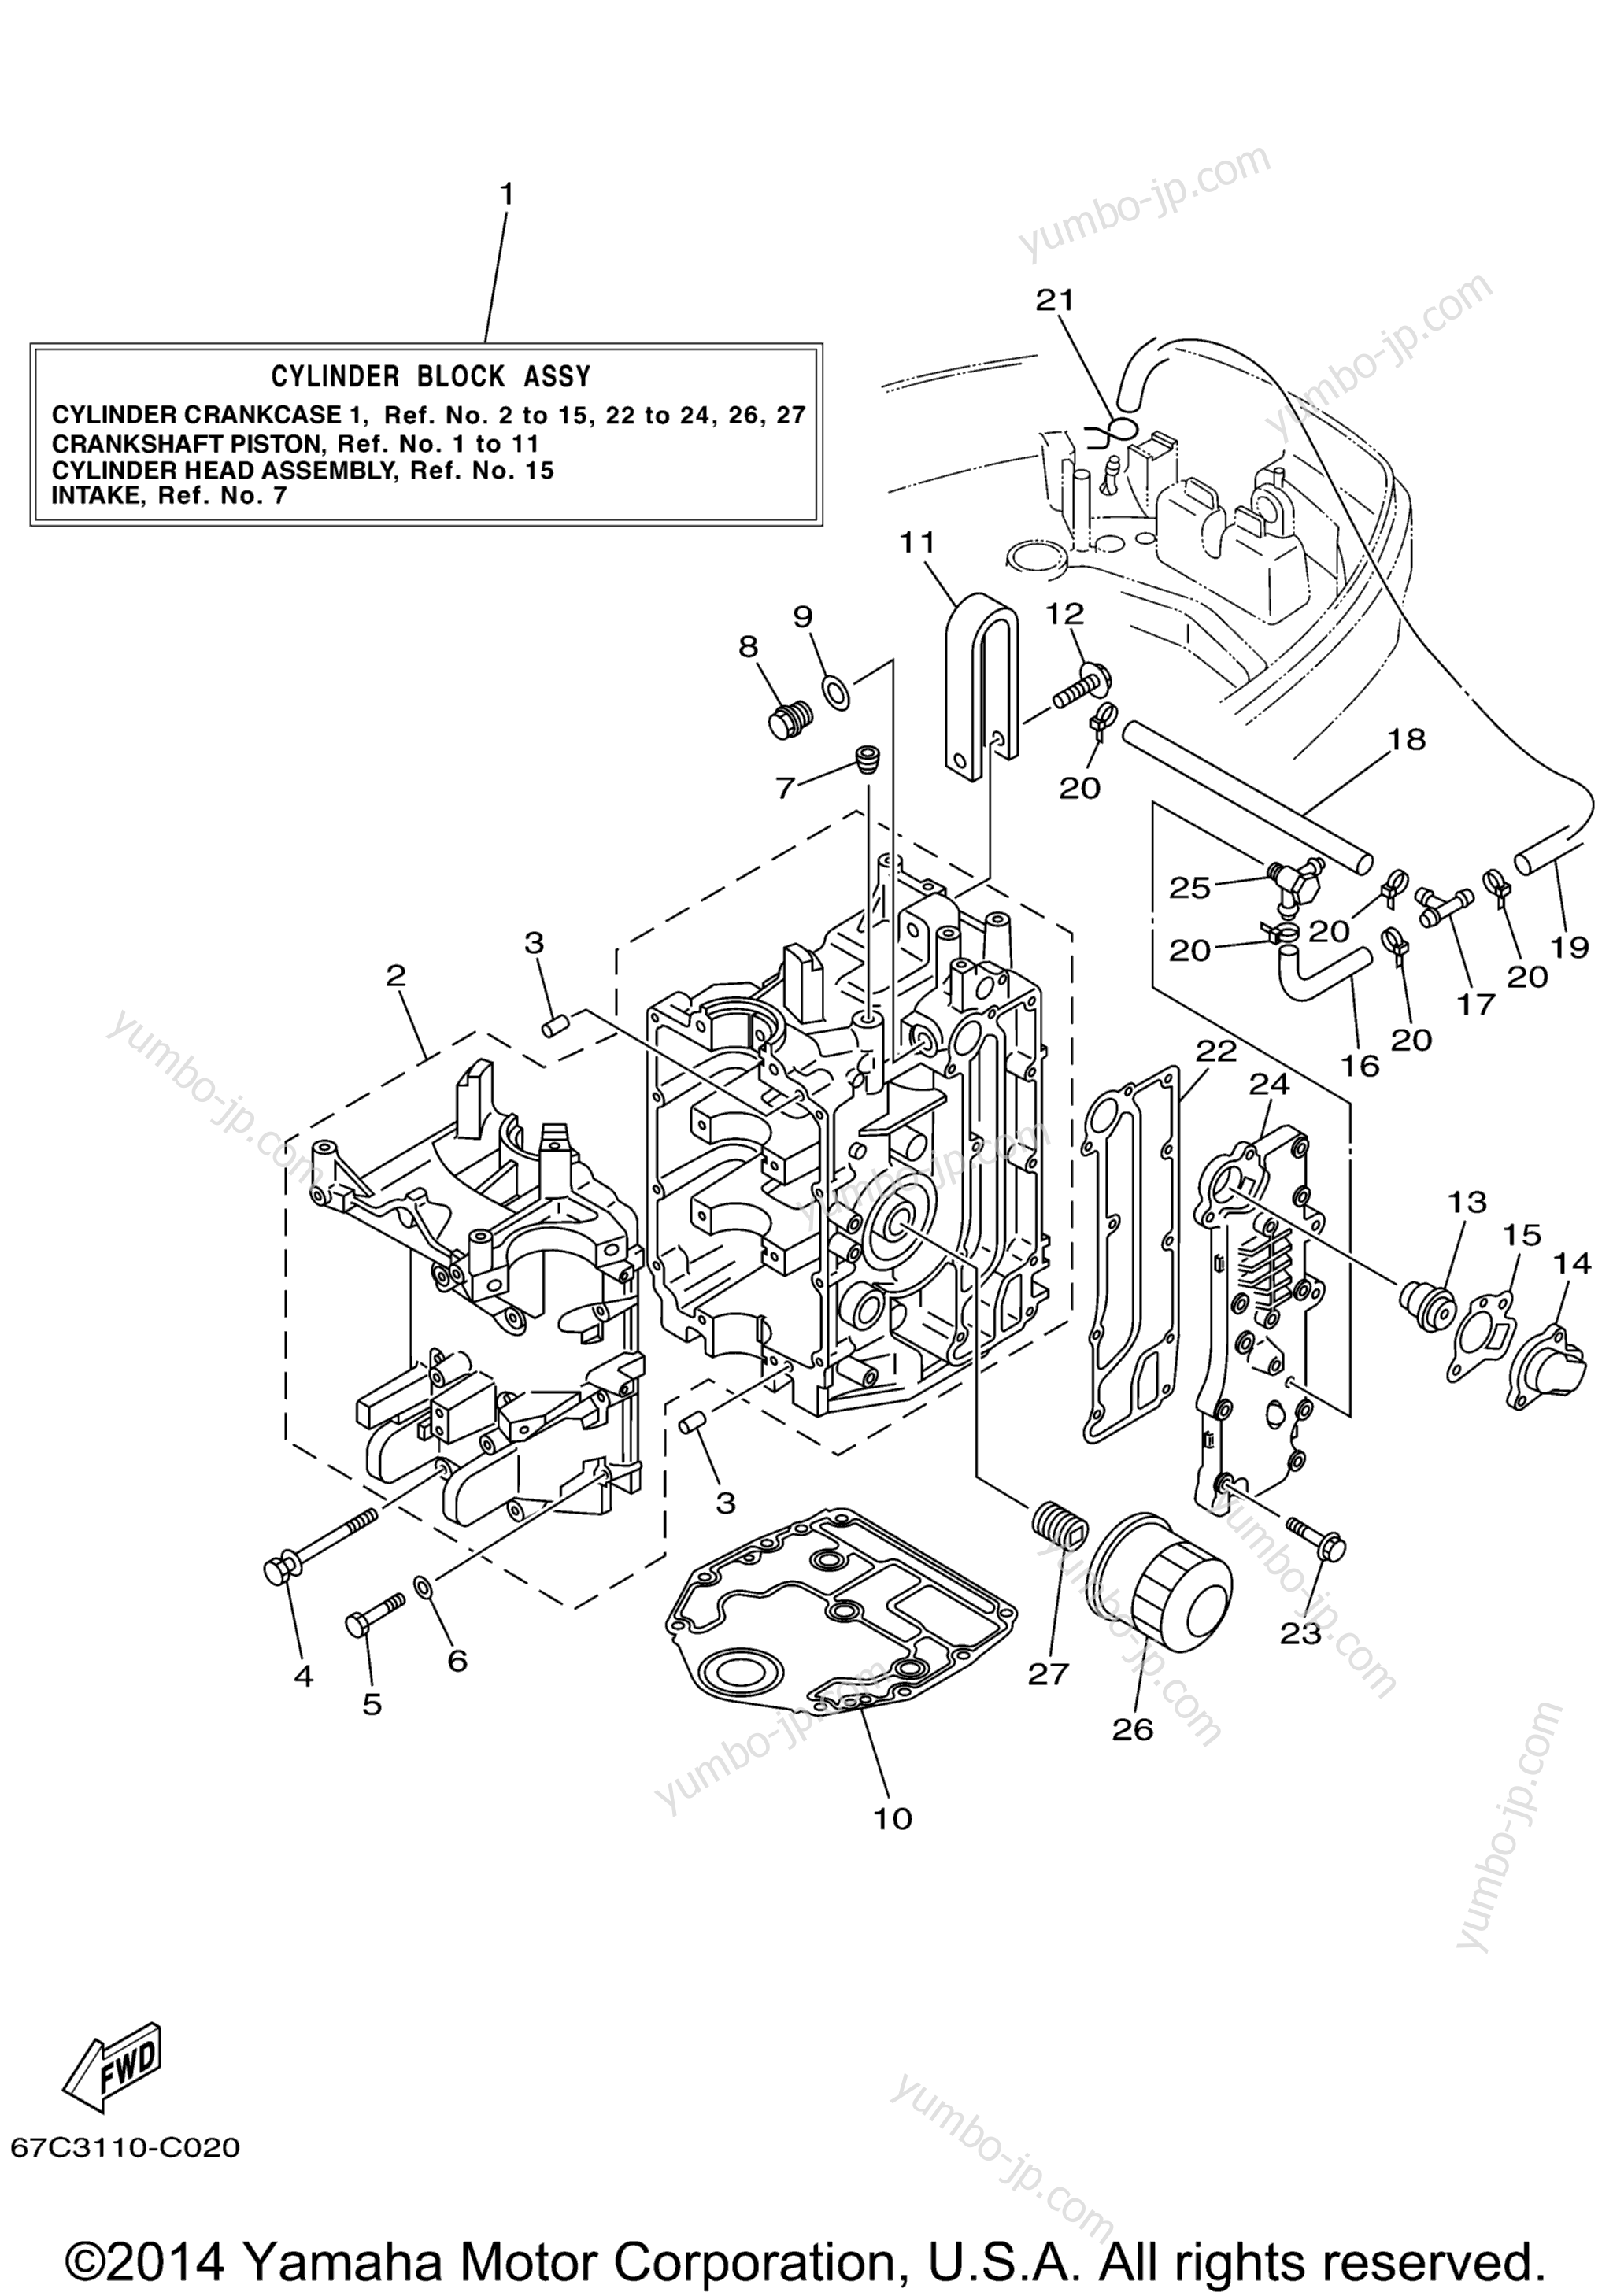 Cylinder Crankcase 1 для лодочных моторов YAMAHA F40TLRD_MSHD_MLHD_MJHD_ELRD (F40MJHD) 2005 г.